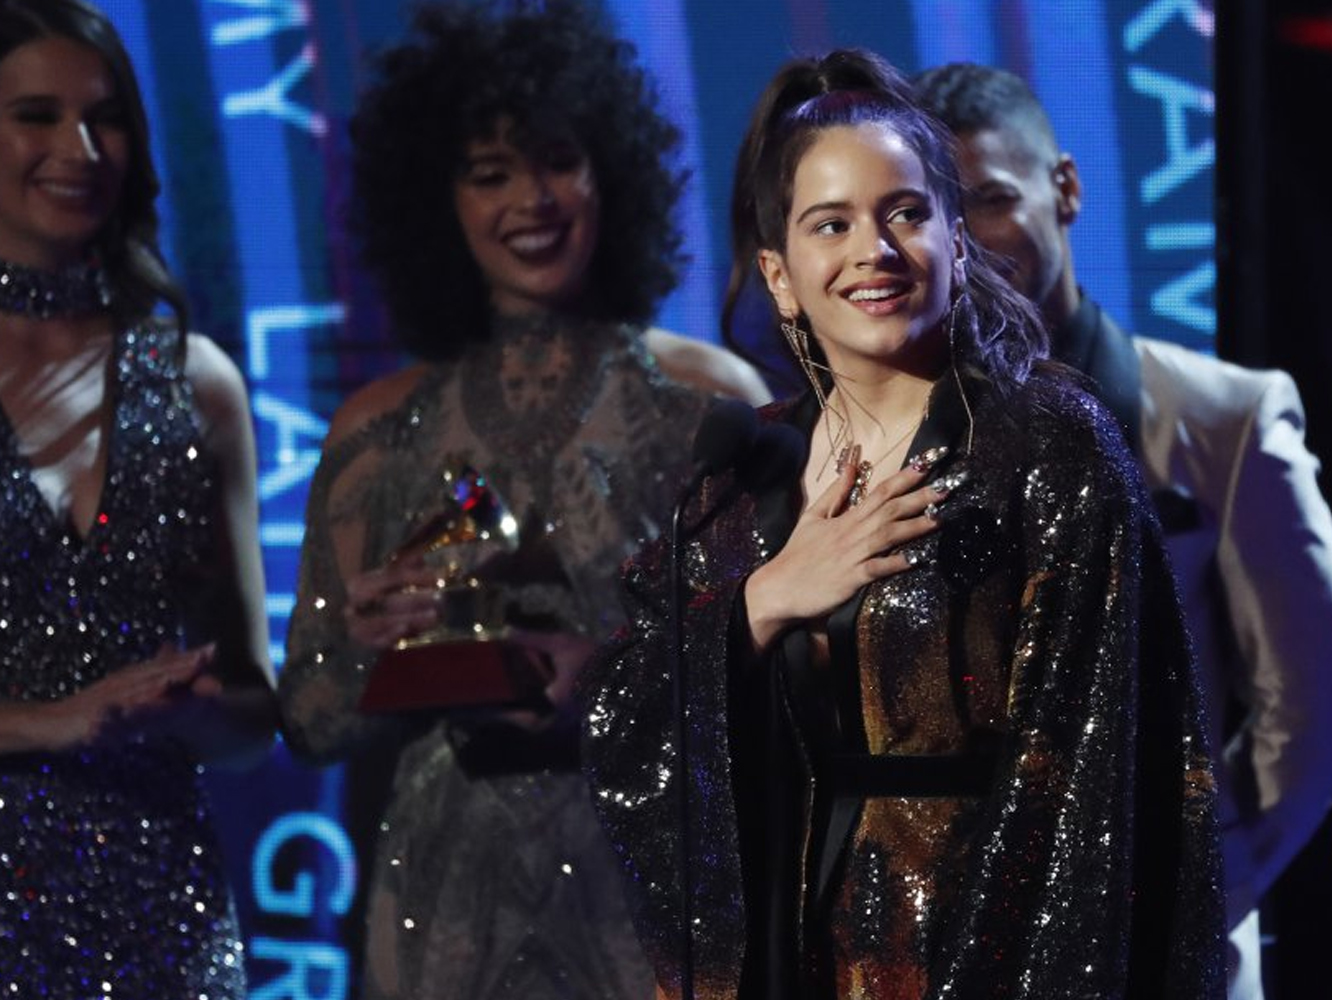  Premios Grammy Latinos 2018 | Jorge Drexler triunfa y Rosalía vuelve a casa con dos gramófonos